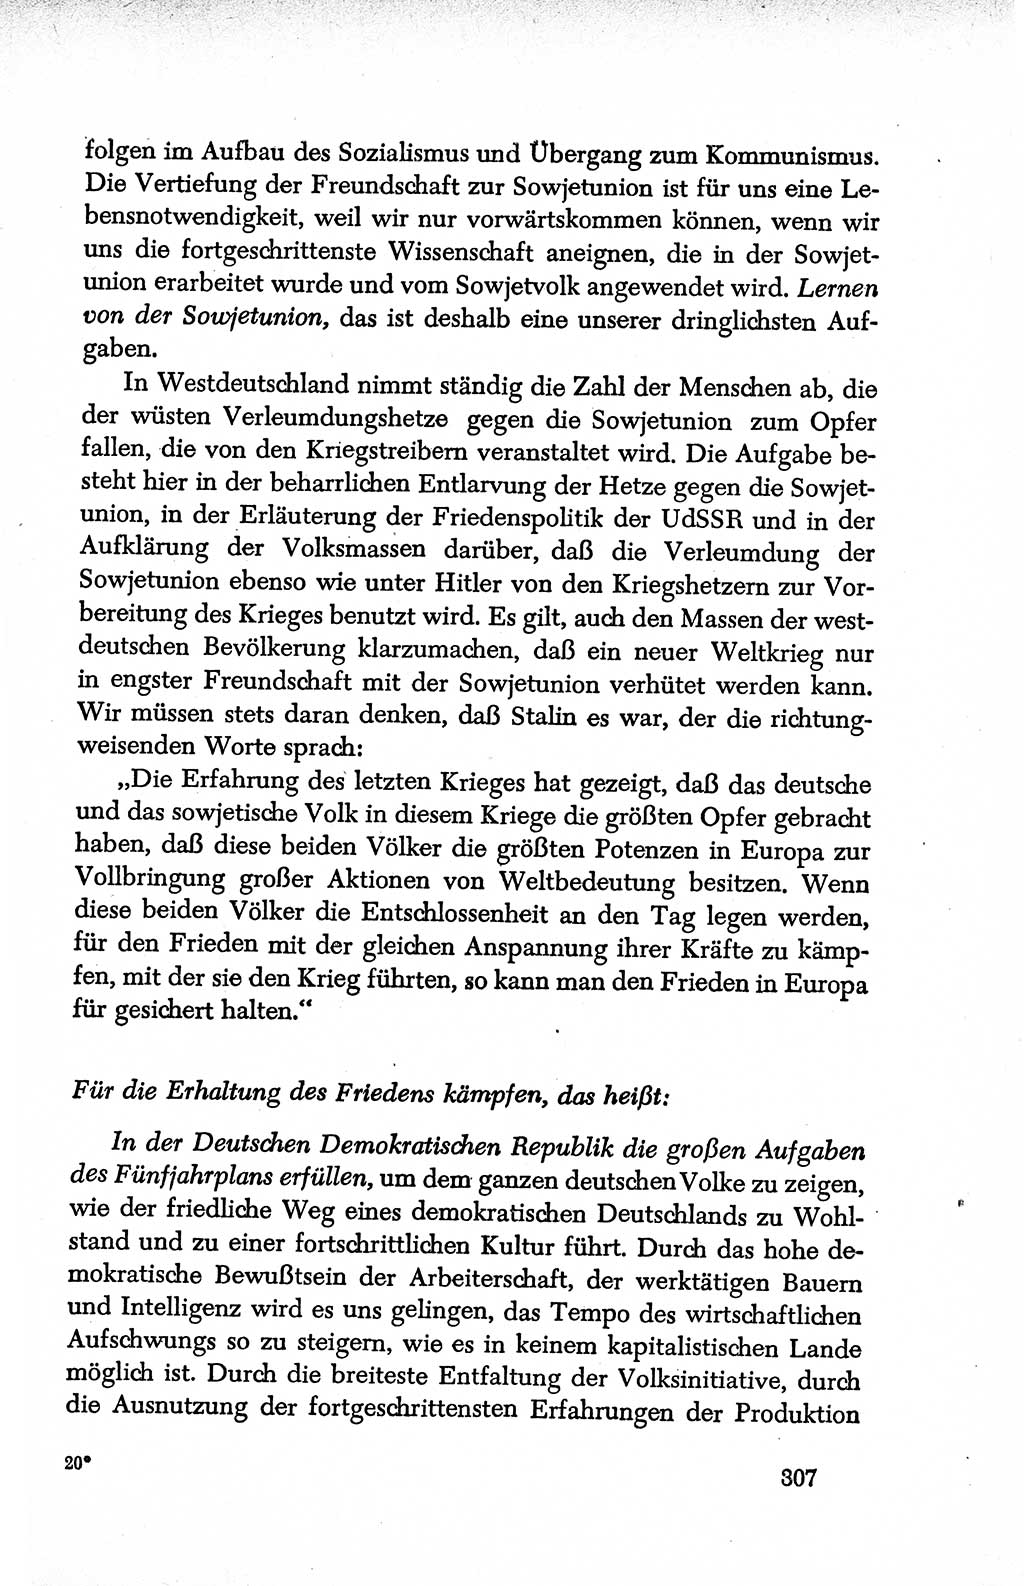 Dokumente der Sozialistischen Einheitspartei Deutschlands (SED) [Deutsche Demokratische Republik (DDR)] 1950-1952, Seite 307 (Dok. SED DDR 1950-1952, S. 307)